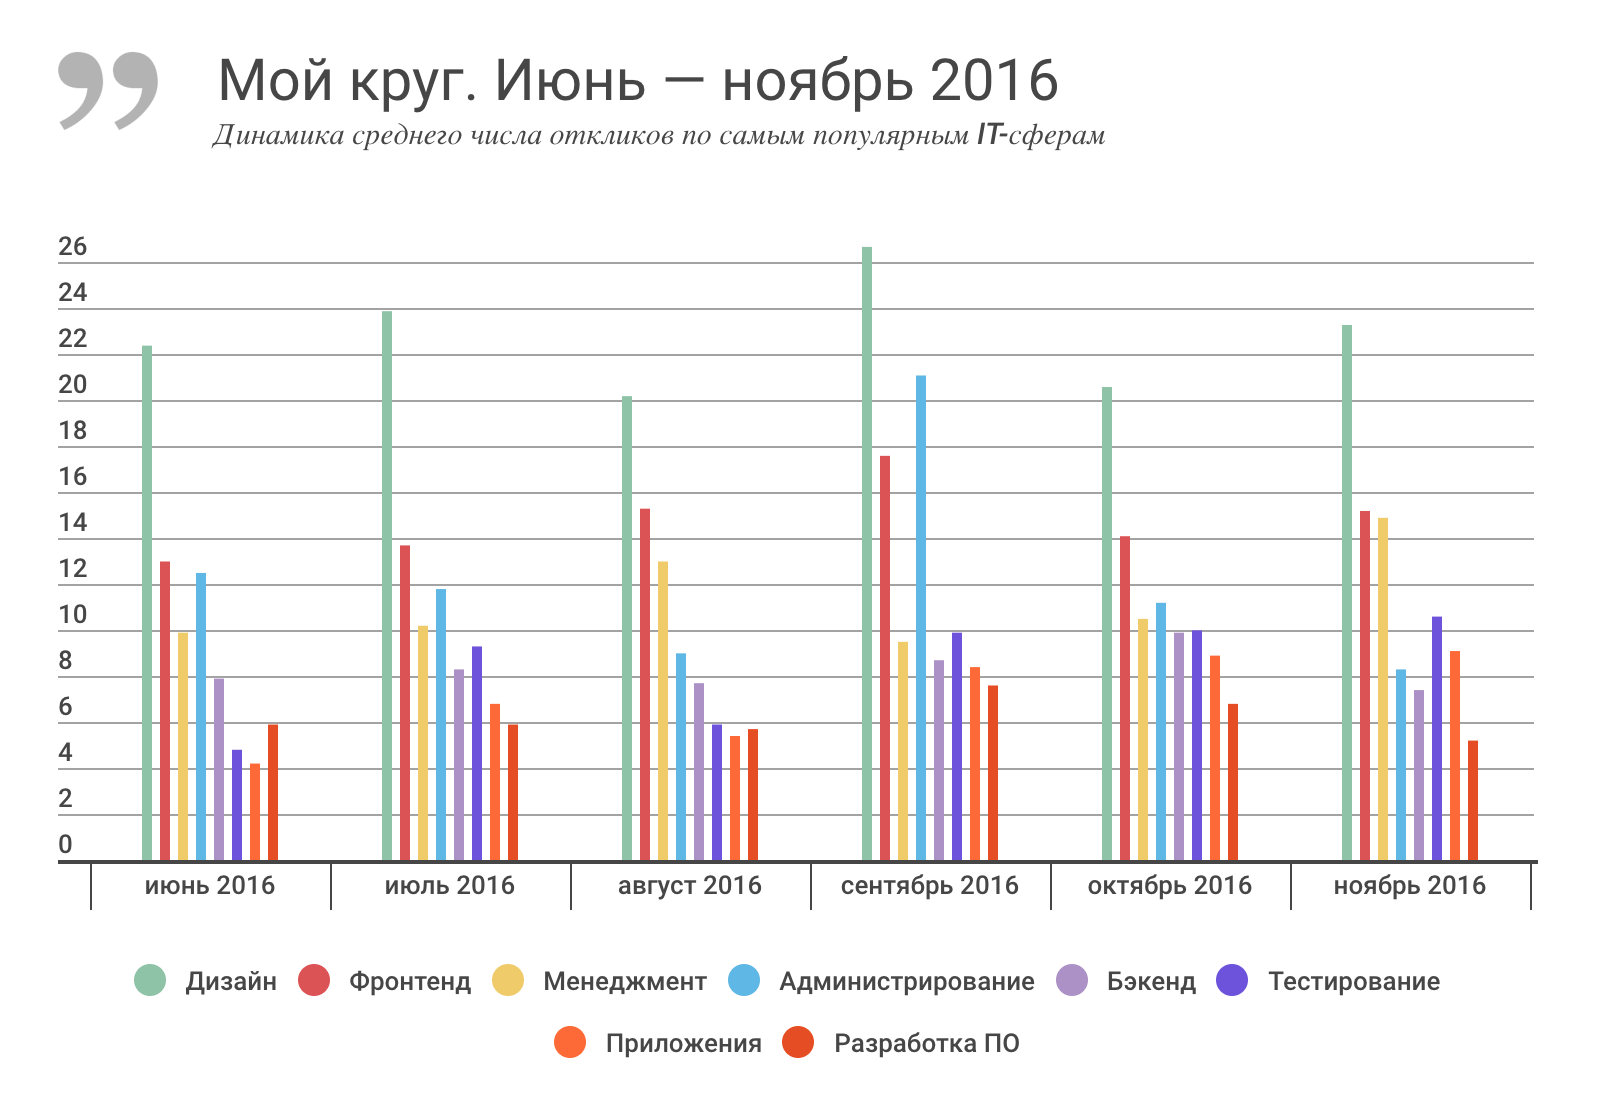 Отчет о результатах «Моего круга» за ноябрь 2016, и самые популярные вакансии месяца - 1